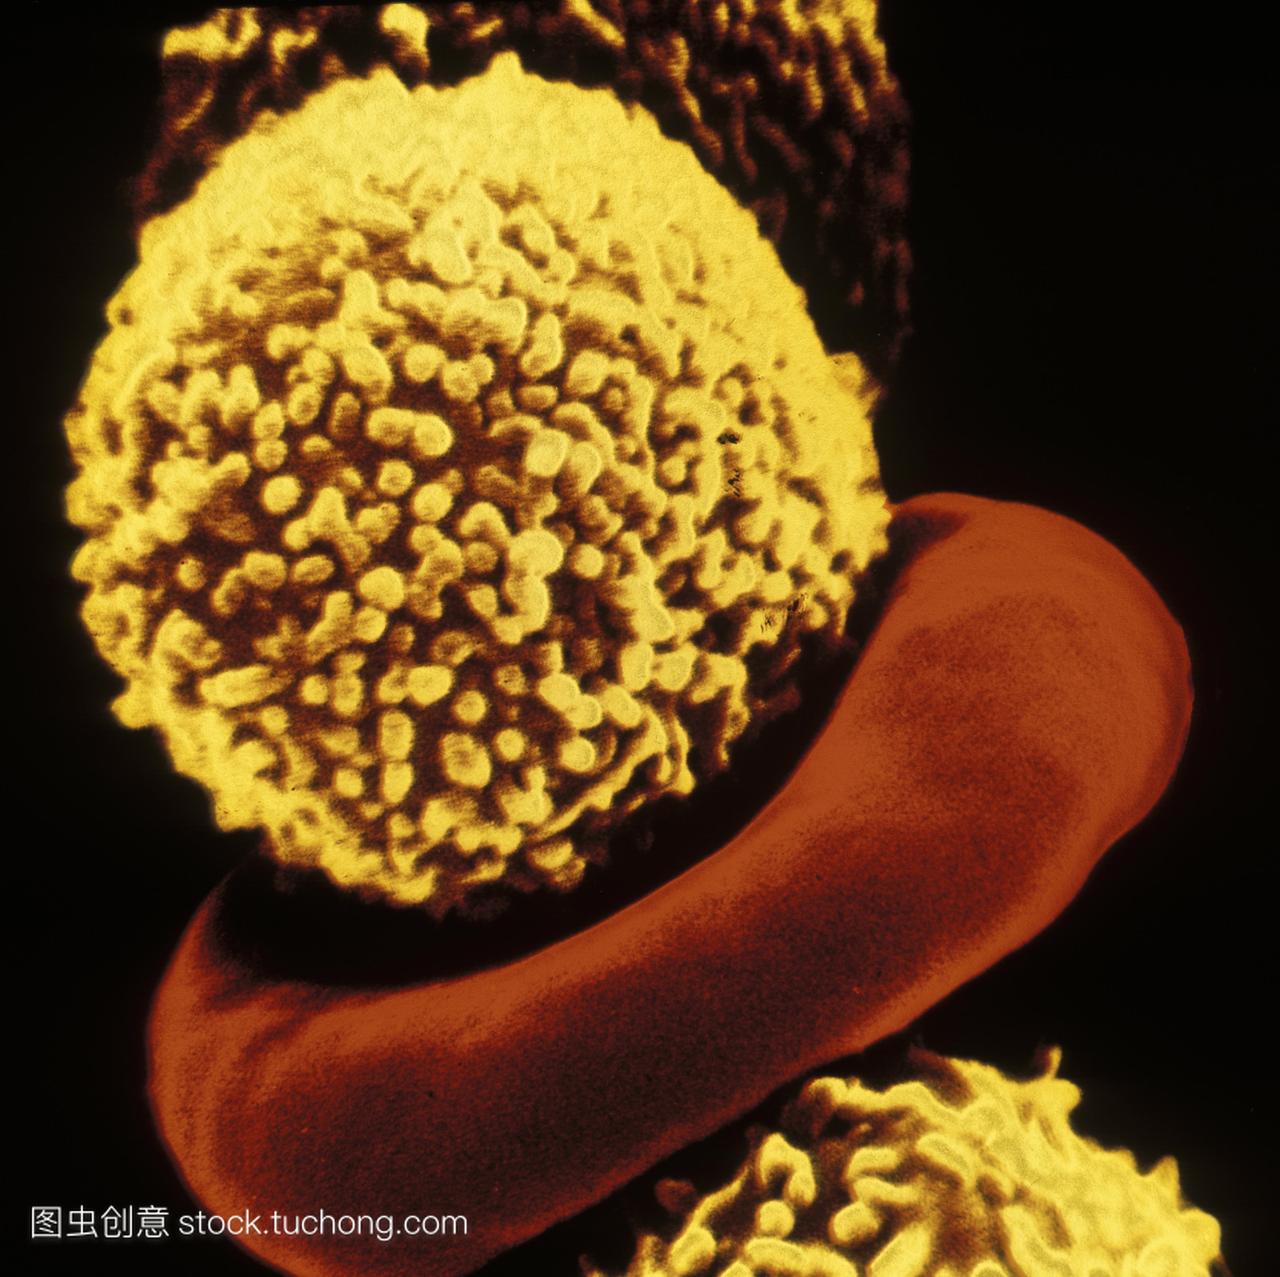 白血病。伪彩色扫描电子microgr--aph白细胞黄